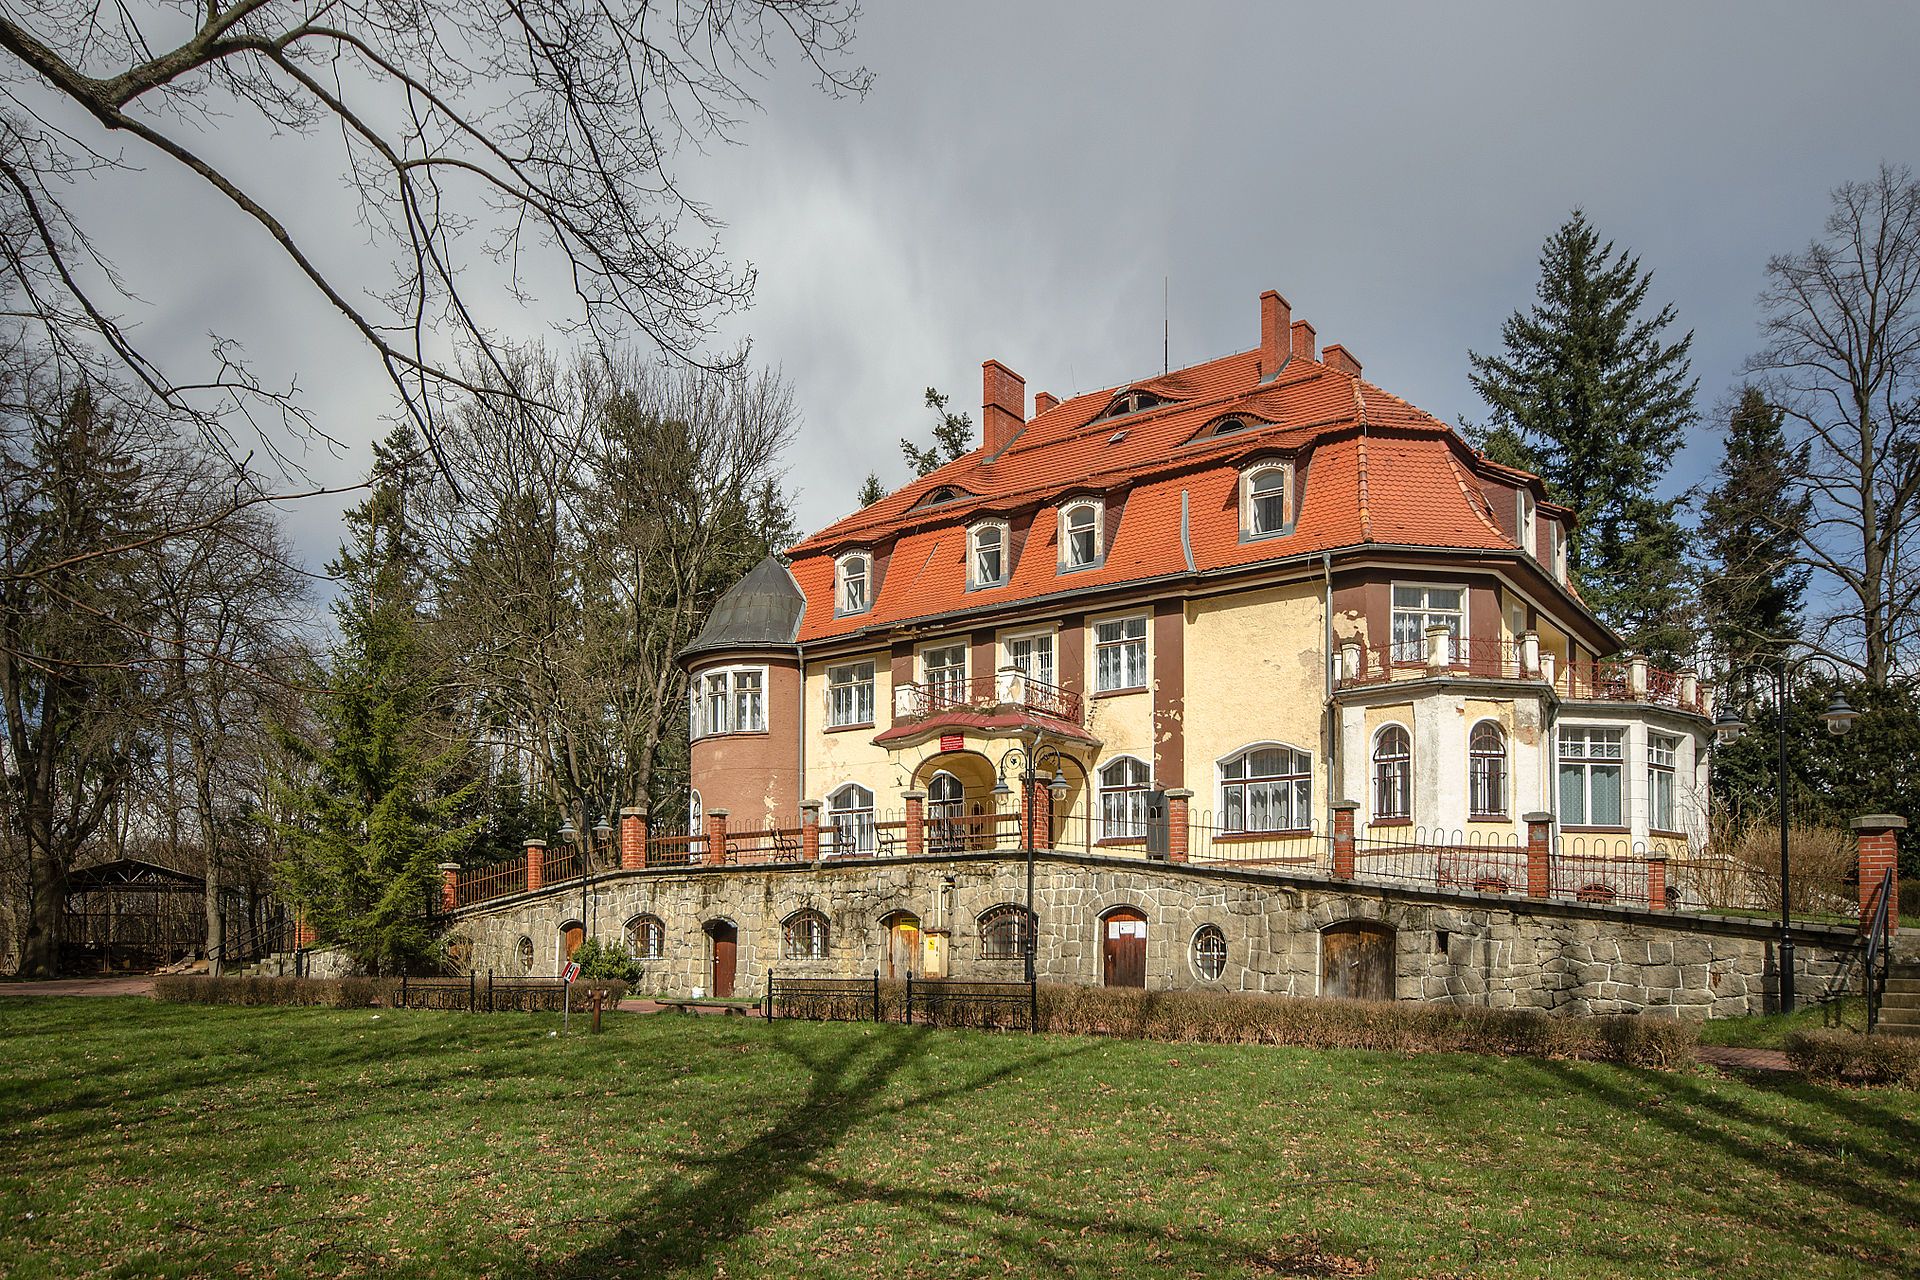  Pałac w Muchowie odzyska blask. Powstanie w nim Centrum Edukacji Ekologicznej i Wulkanizmu